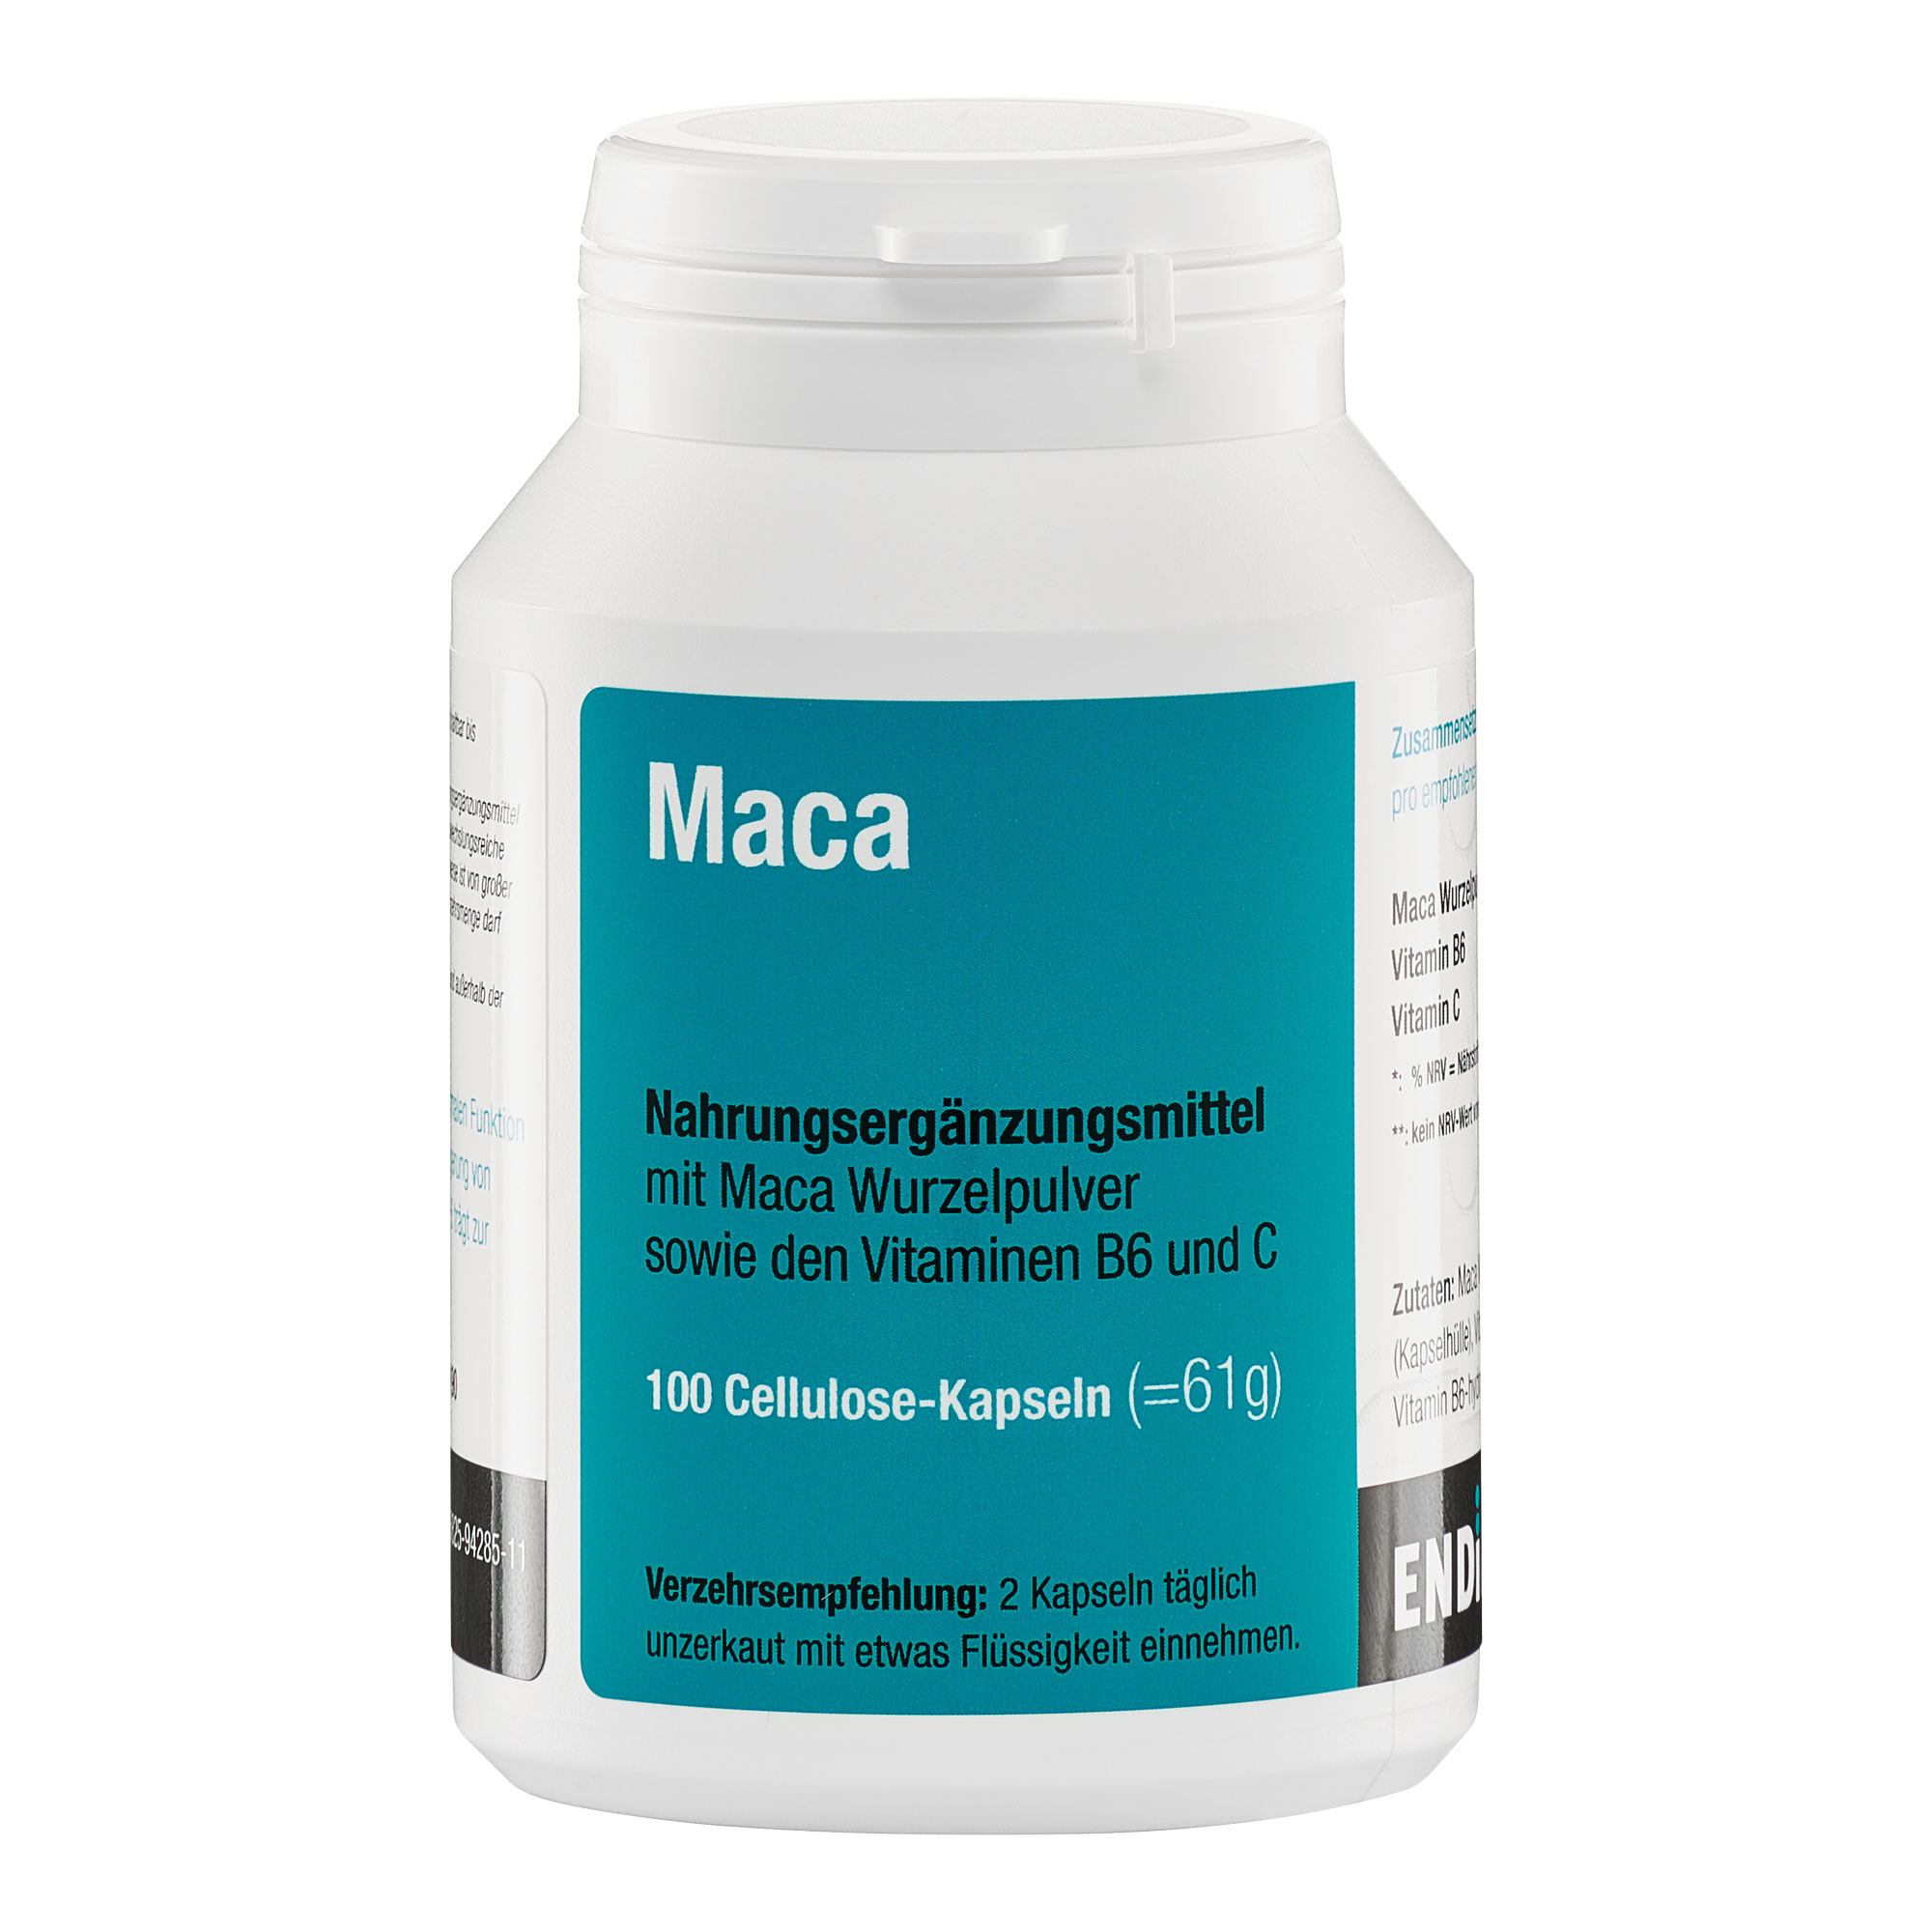 Nahrungsergänzungsmittel mit Maca Wurzelpulver sowie den Vitaminen B6 und C.